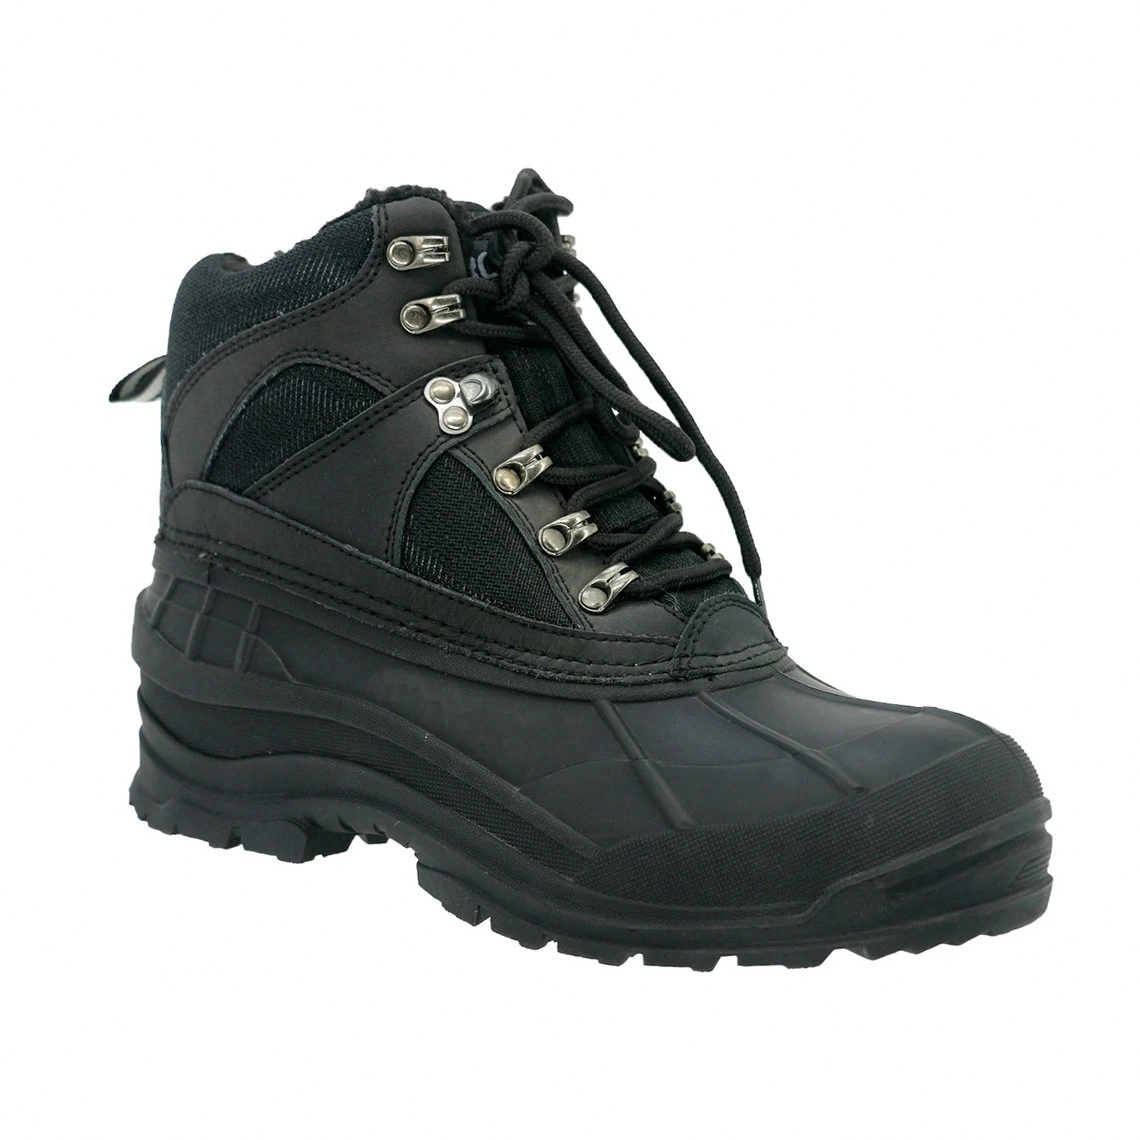 Snow Boots Botines De Mujer Waterproof Men's Brown Shoes For Men - Buy ...